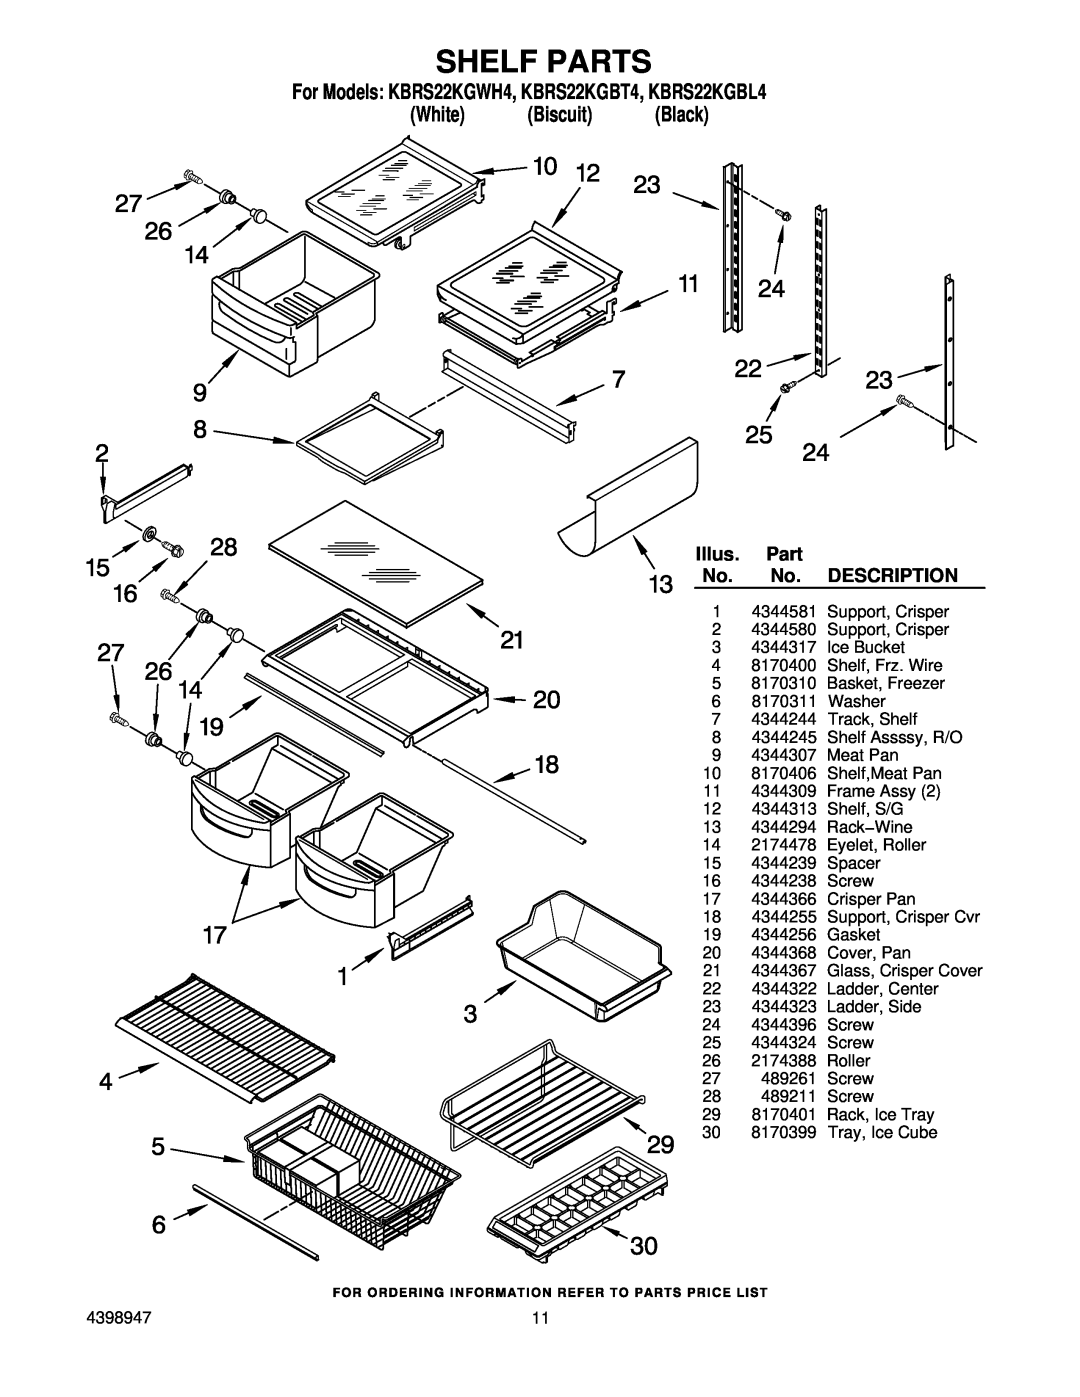 KitchenAid manual Shelf Parts, For Models KBRS22KGWH4, KBRS22KGBT4, KBRS22KGBL4 White Biscuit Black, Illus, Description 